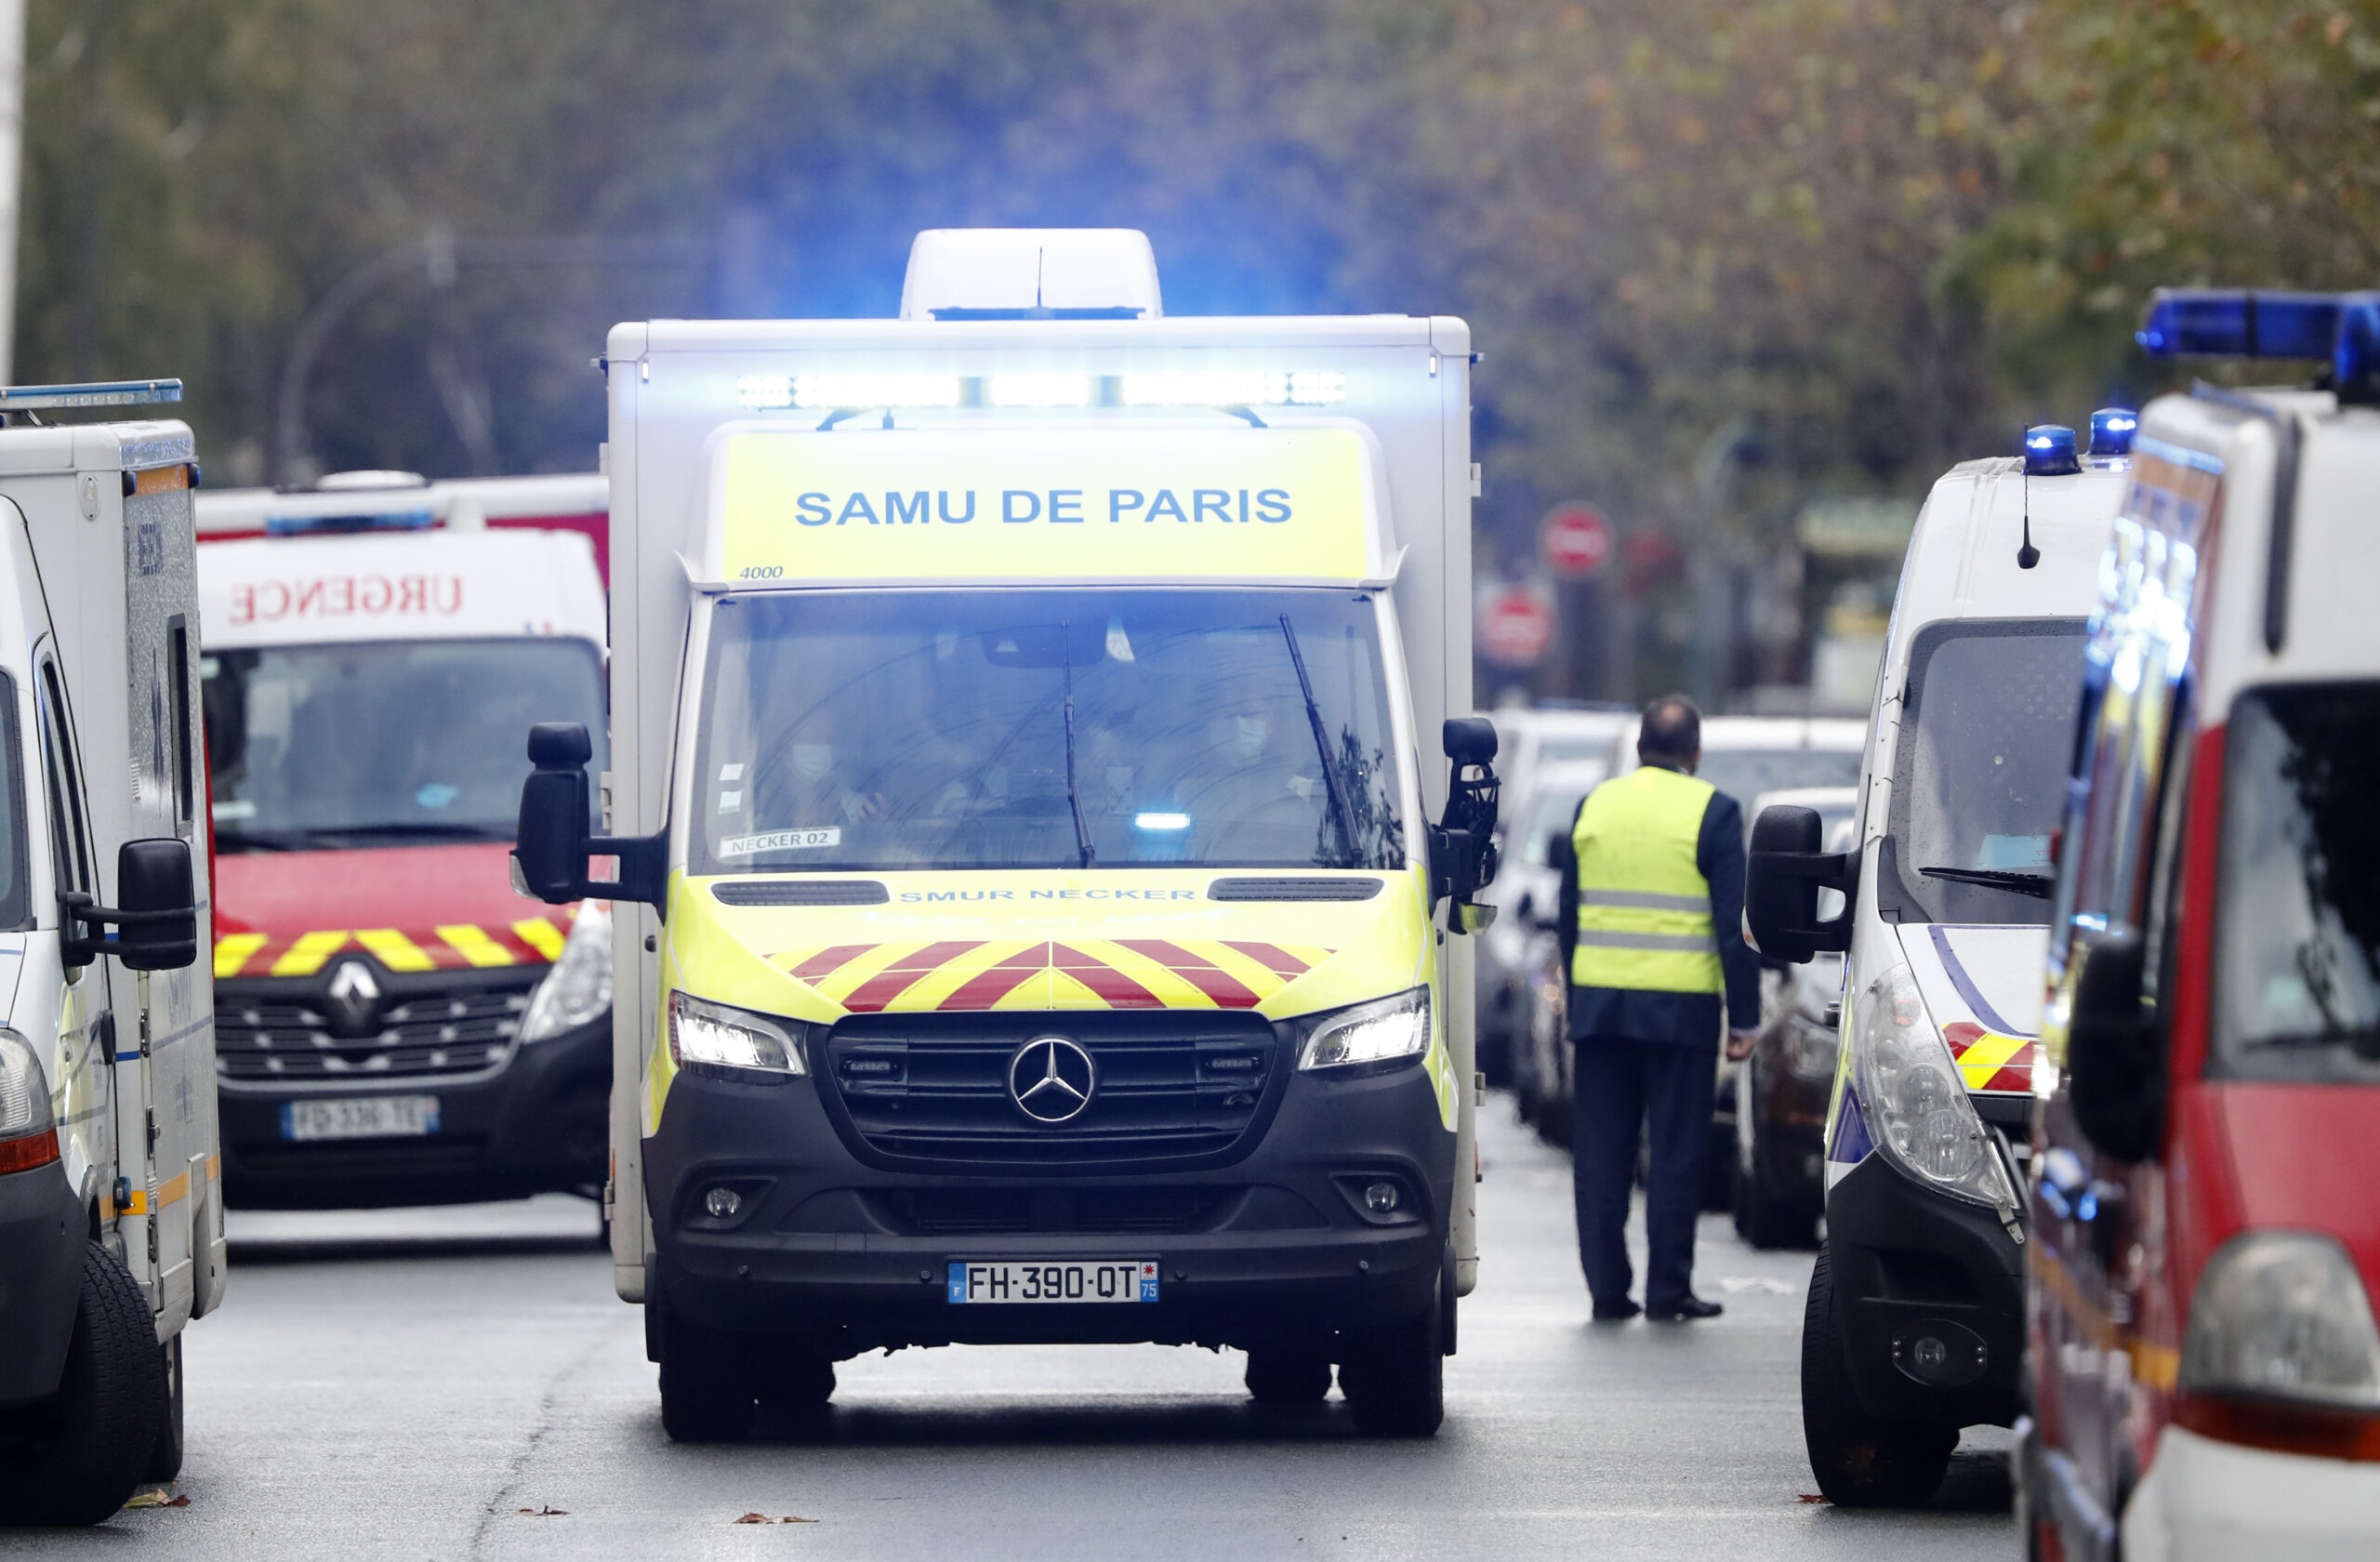 Γαλλία: Μεθυσμένος οδηγός, που κοιμήθηκε στο τιμόνι, κατηγορείται ότι σκότωσε έναν αστυνομικό όταν πήγε να τον ξυπνήσει